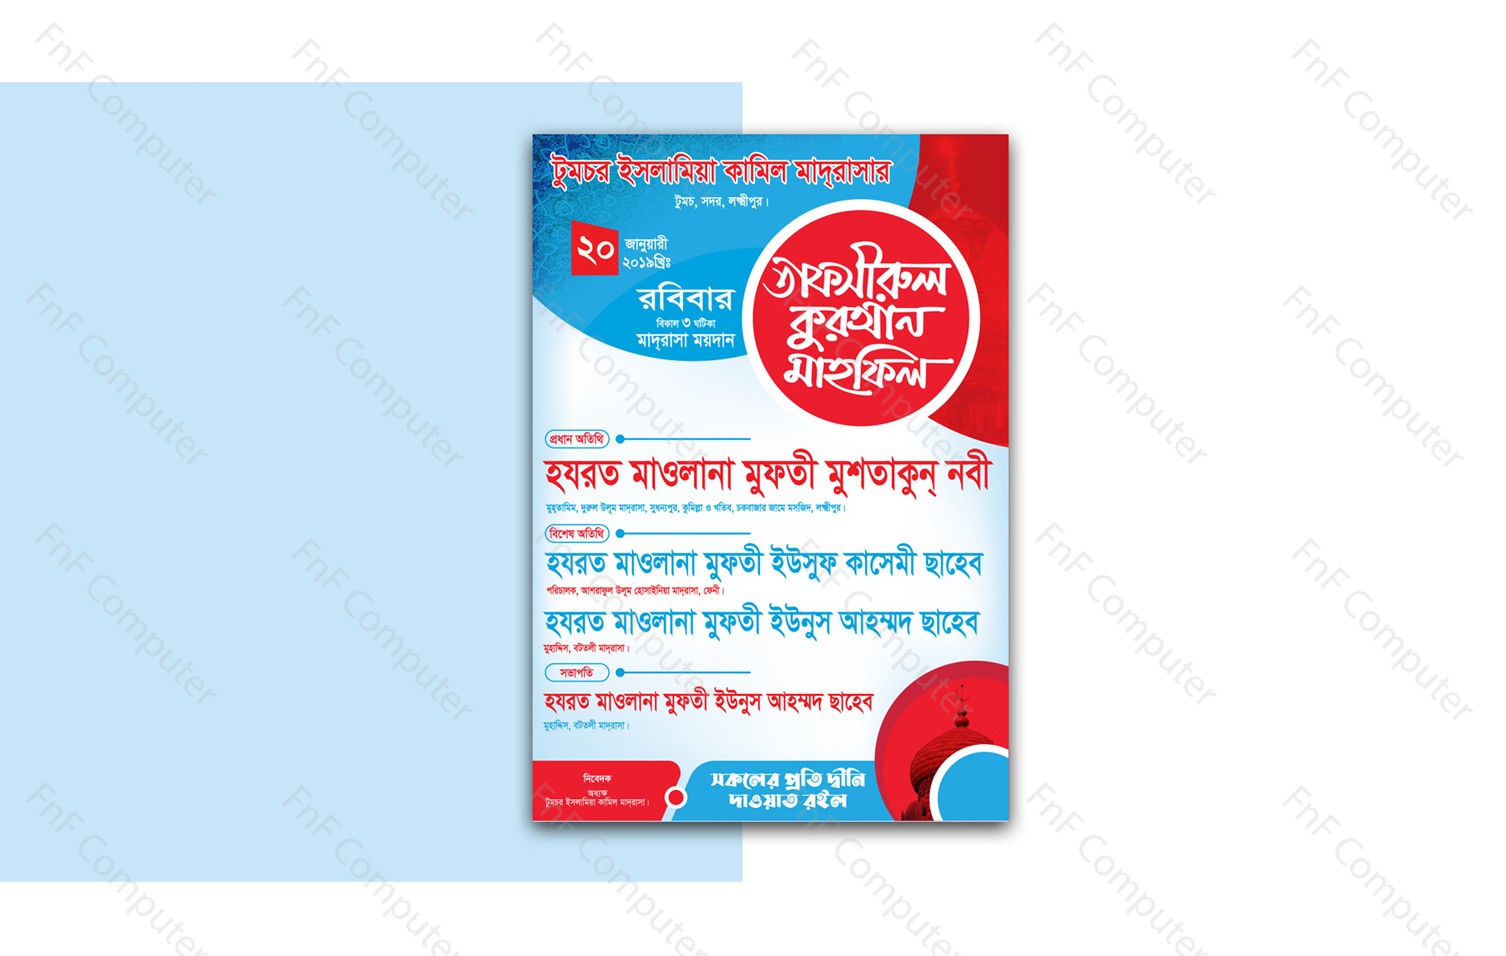 Bangla Tafsirul Quran Mahfil Poster Design Vector File free